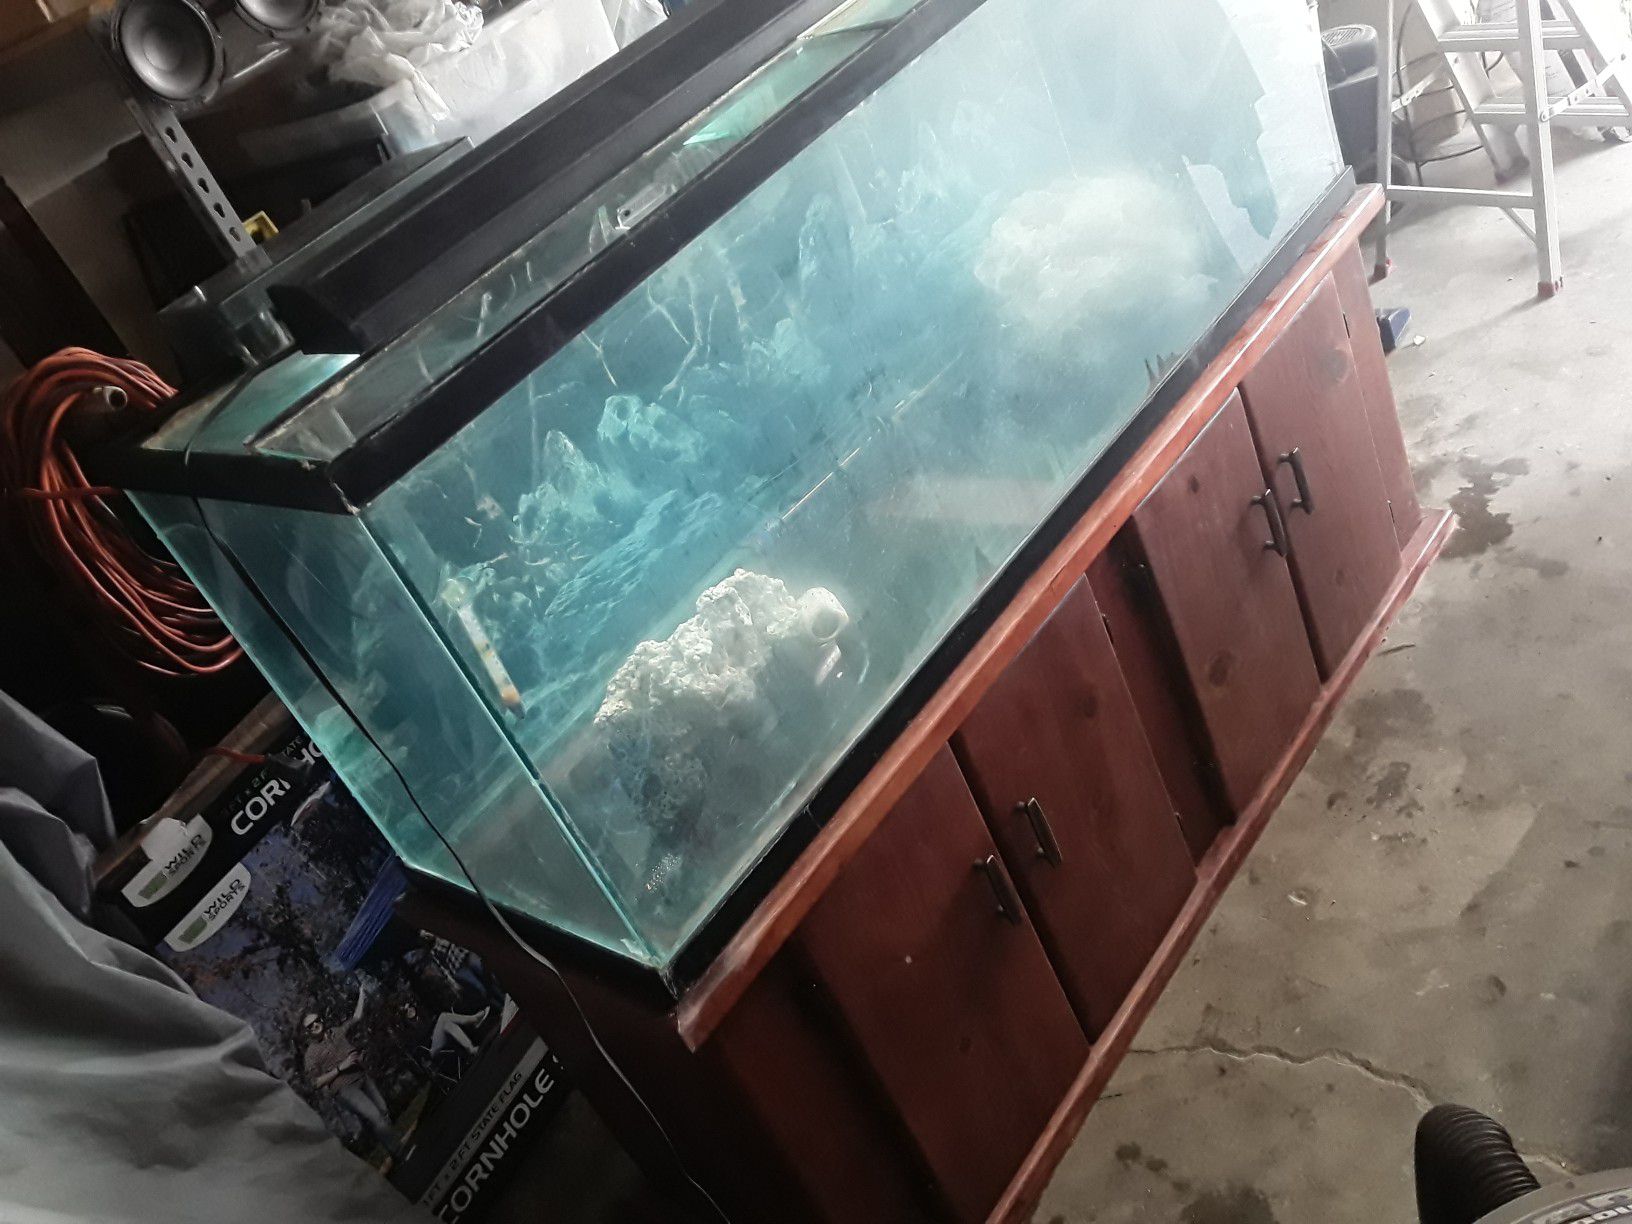 120g fish tank